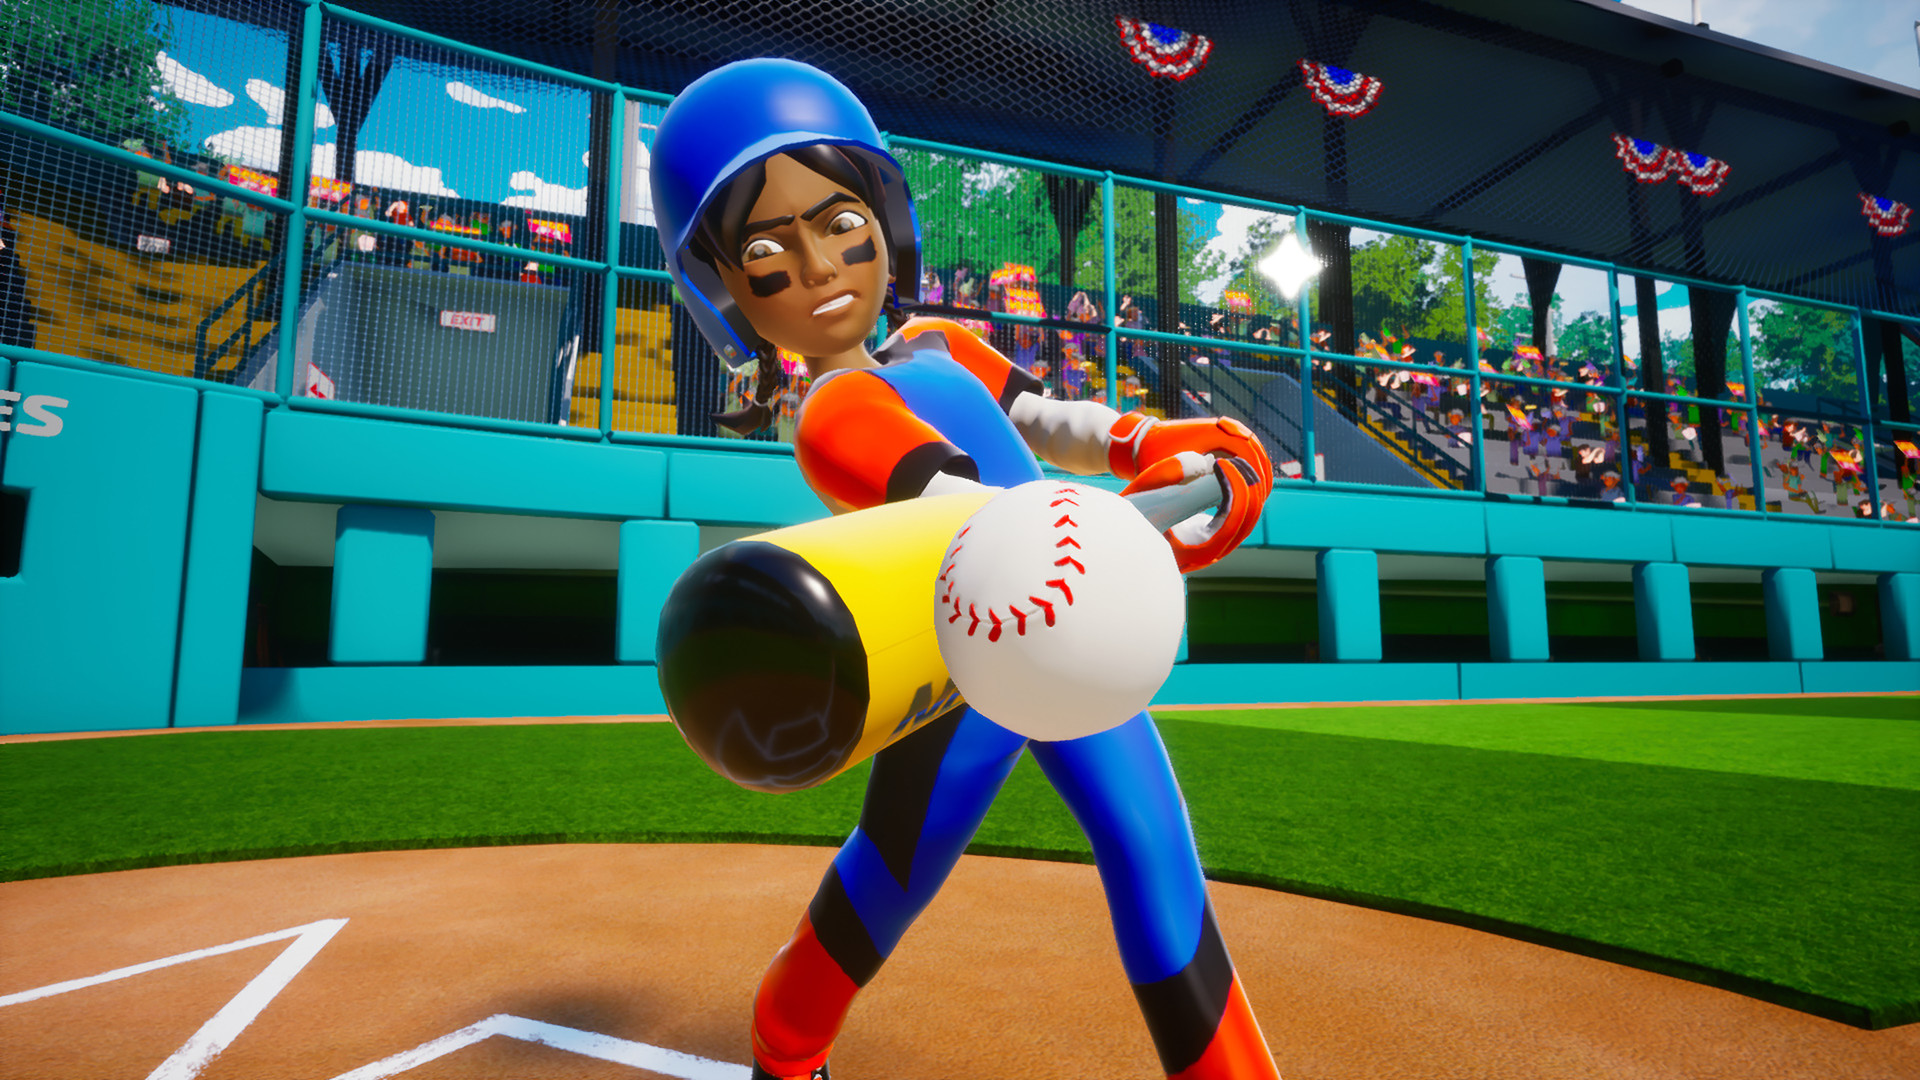 Little League World Series Baseball 2022 Steam CD Key $0.59